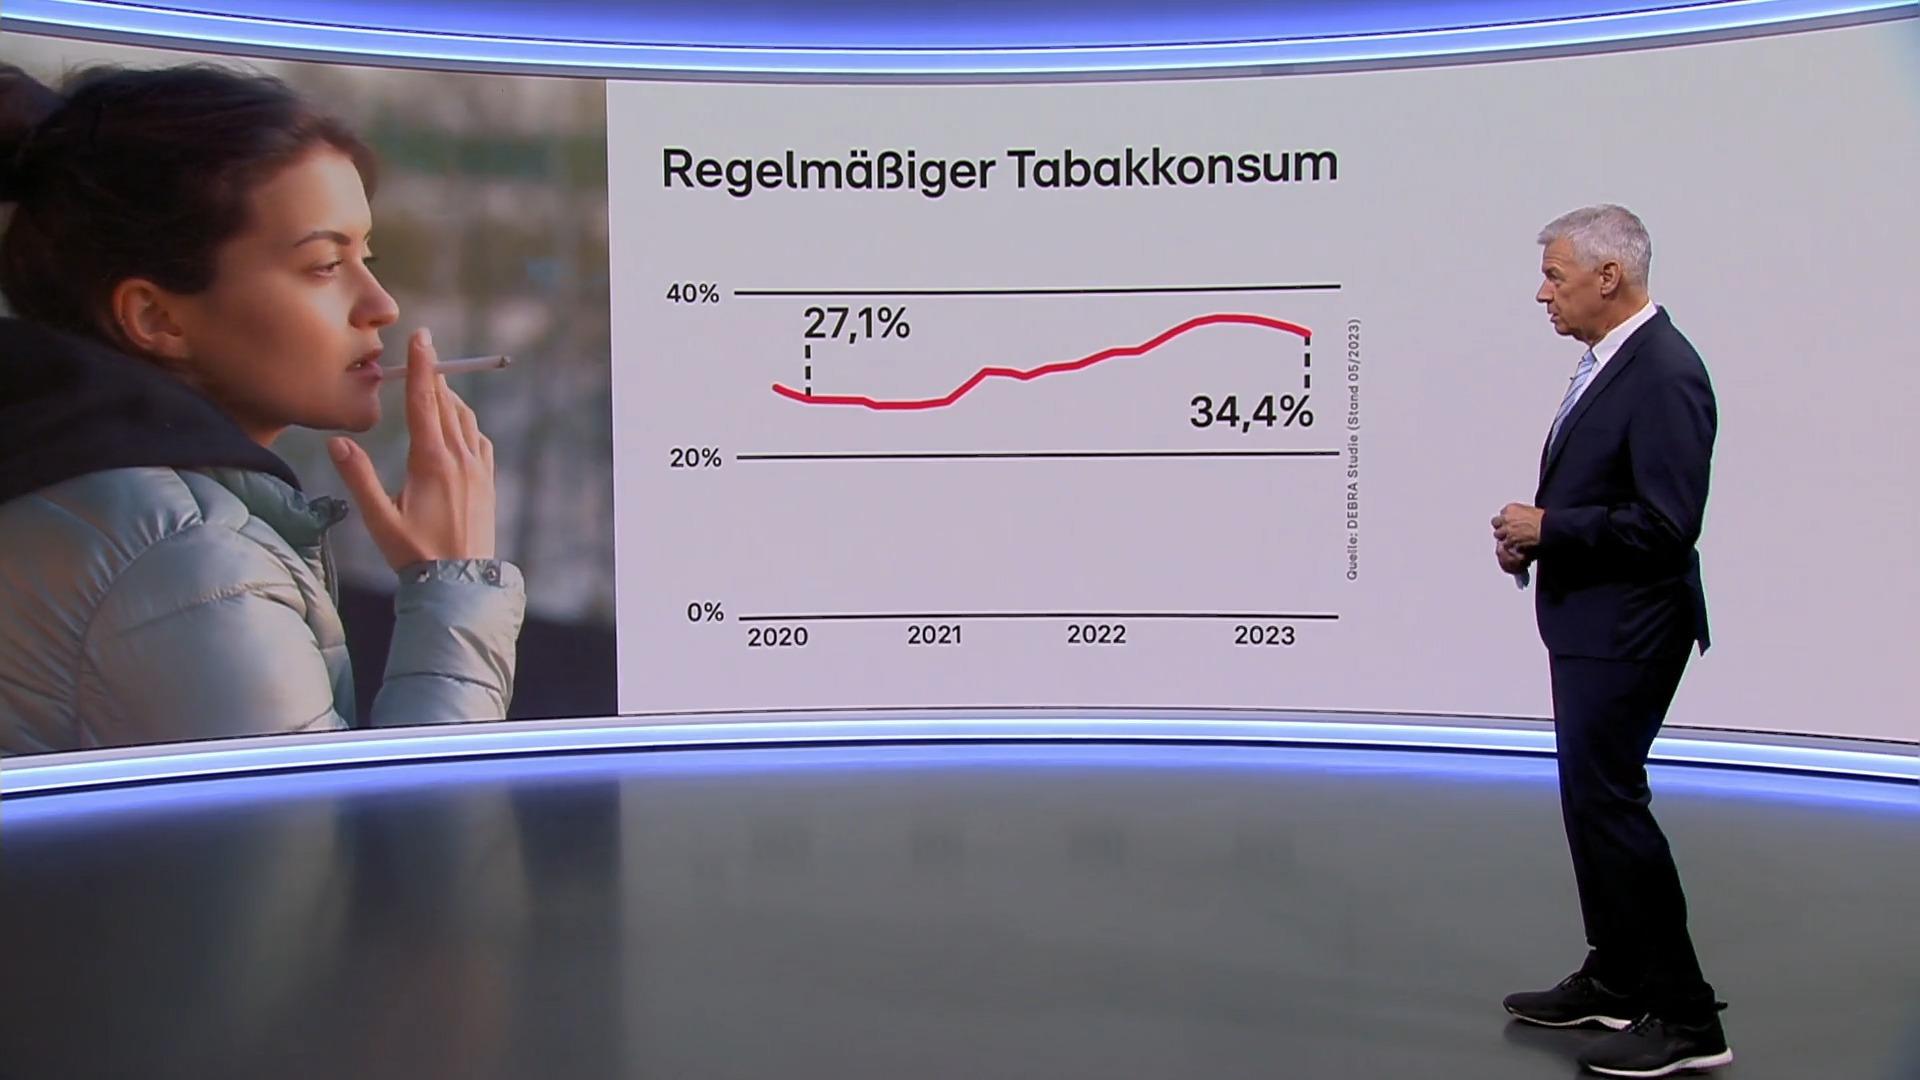 La gente vuelve a fumar más en Alemania, especialmente los adolescentes fuman más